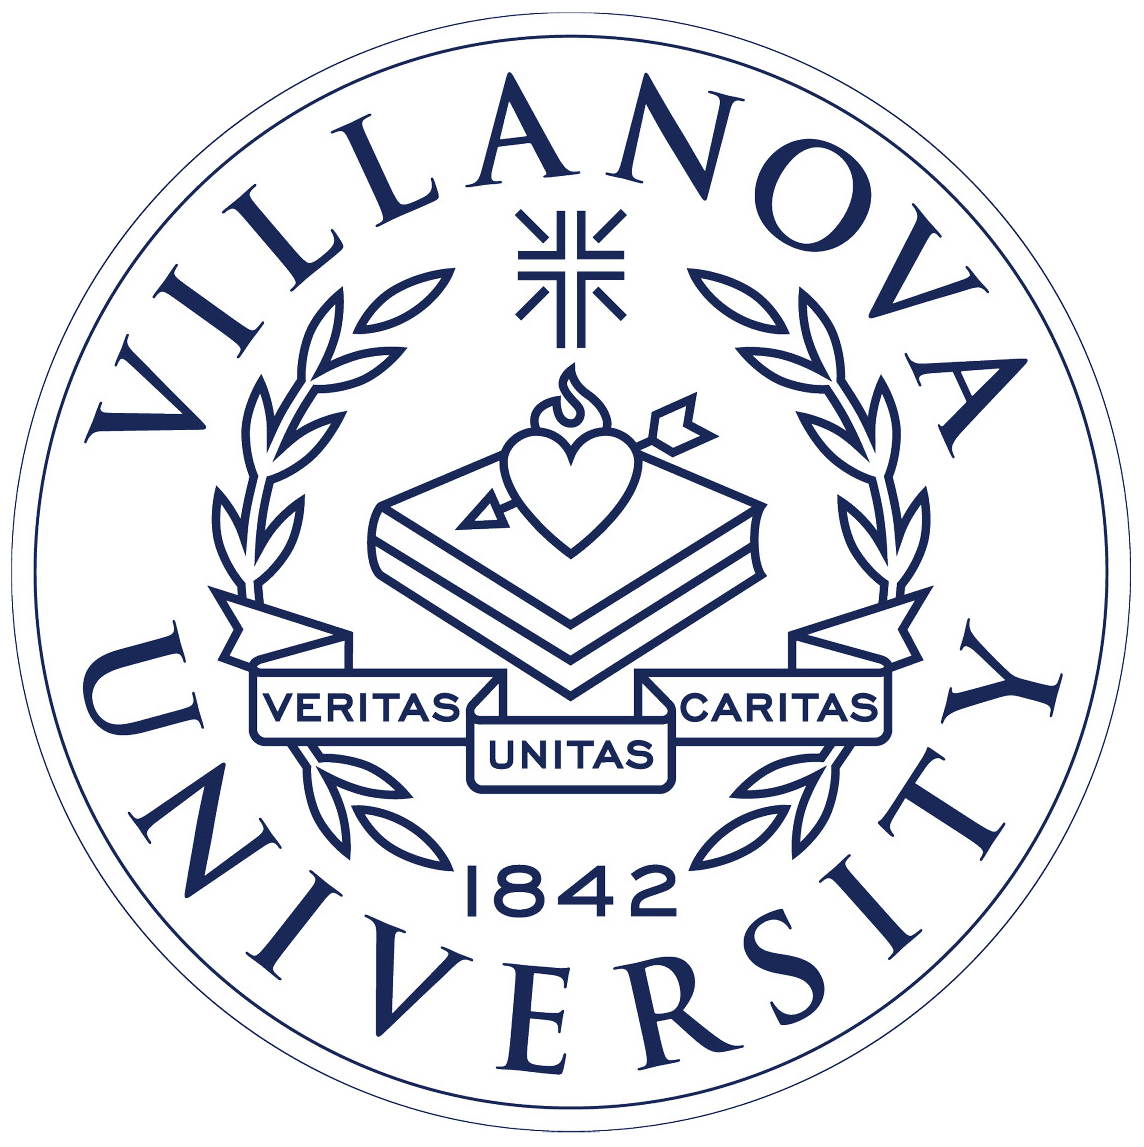 Villanova University | Website Design and Digital Publication